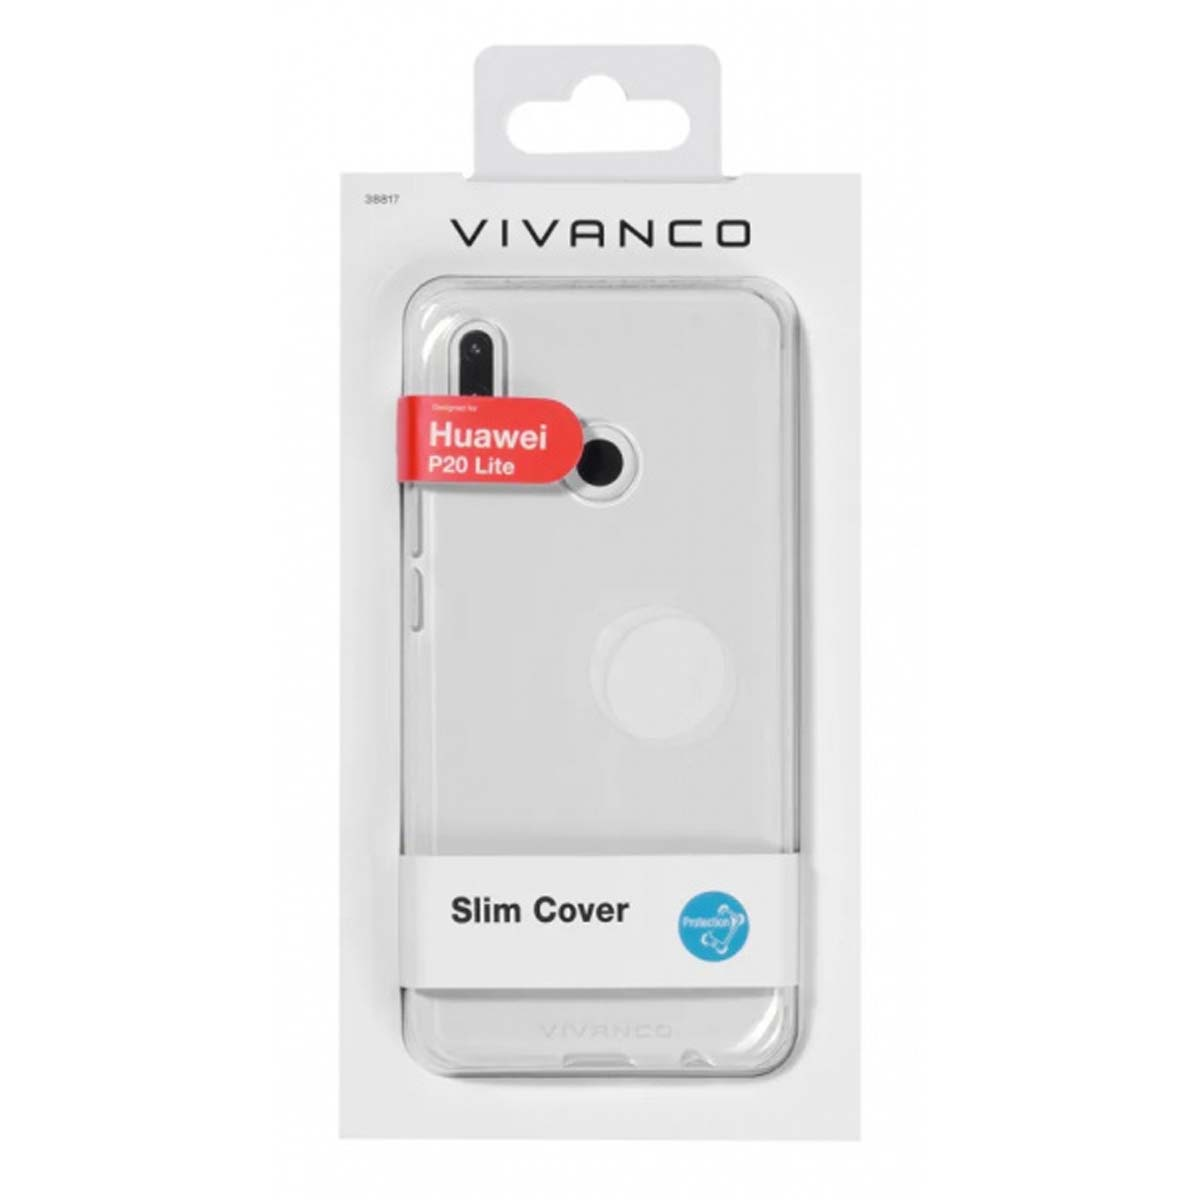 VIVANCO 38817, Lite, P20 Backcover, Transparent Huawei